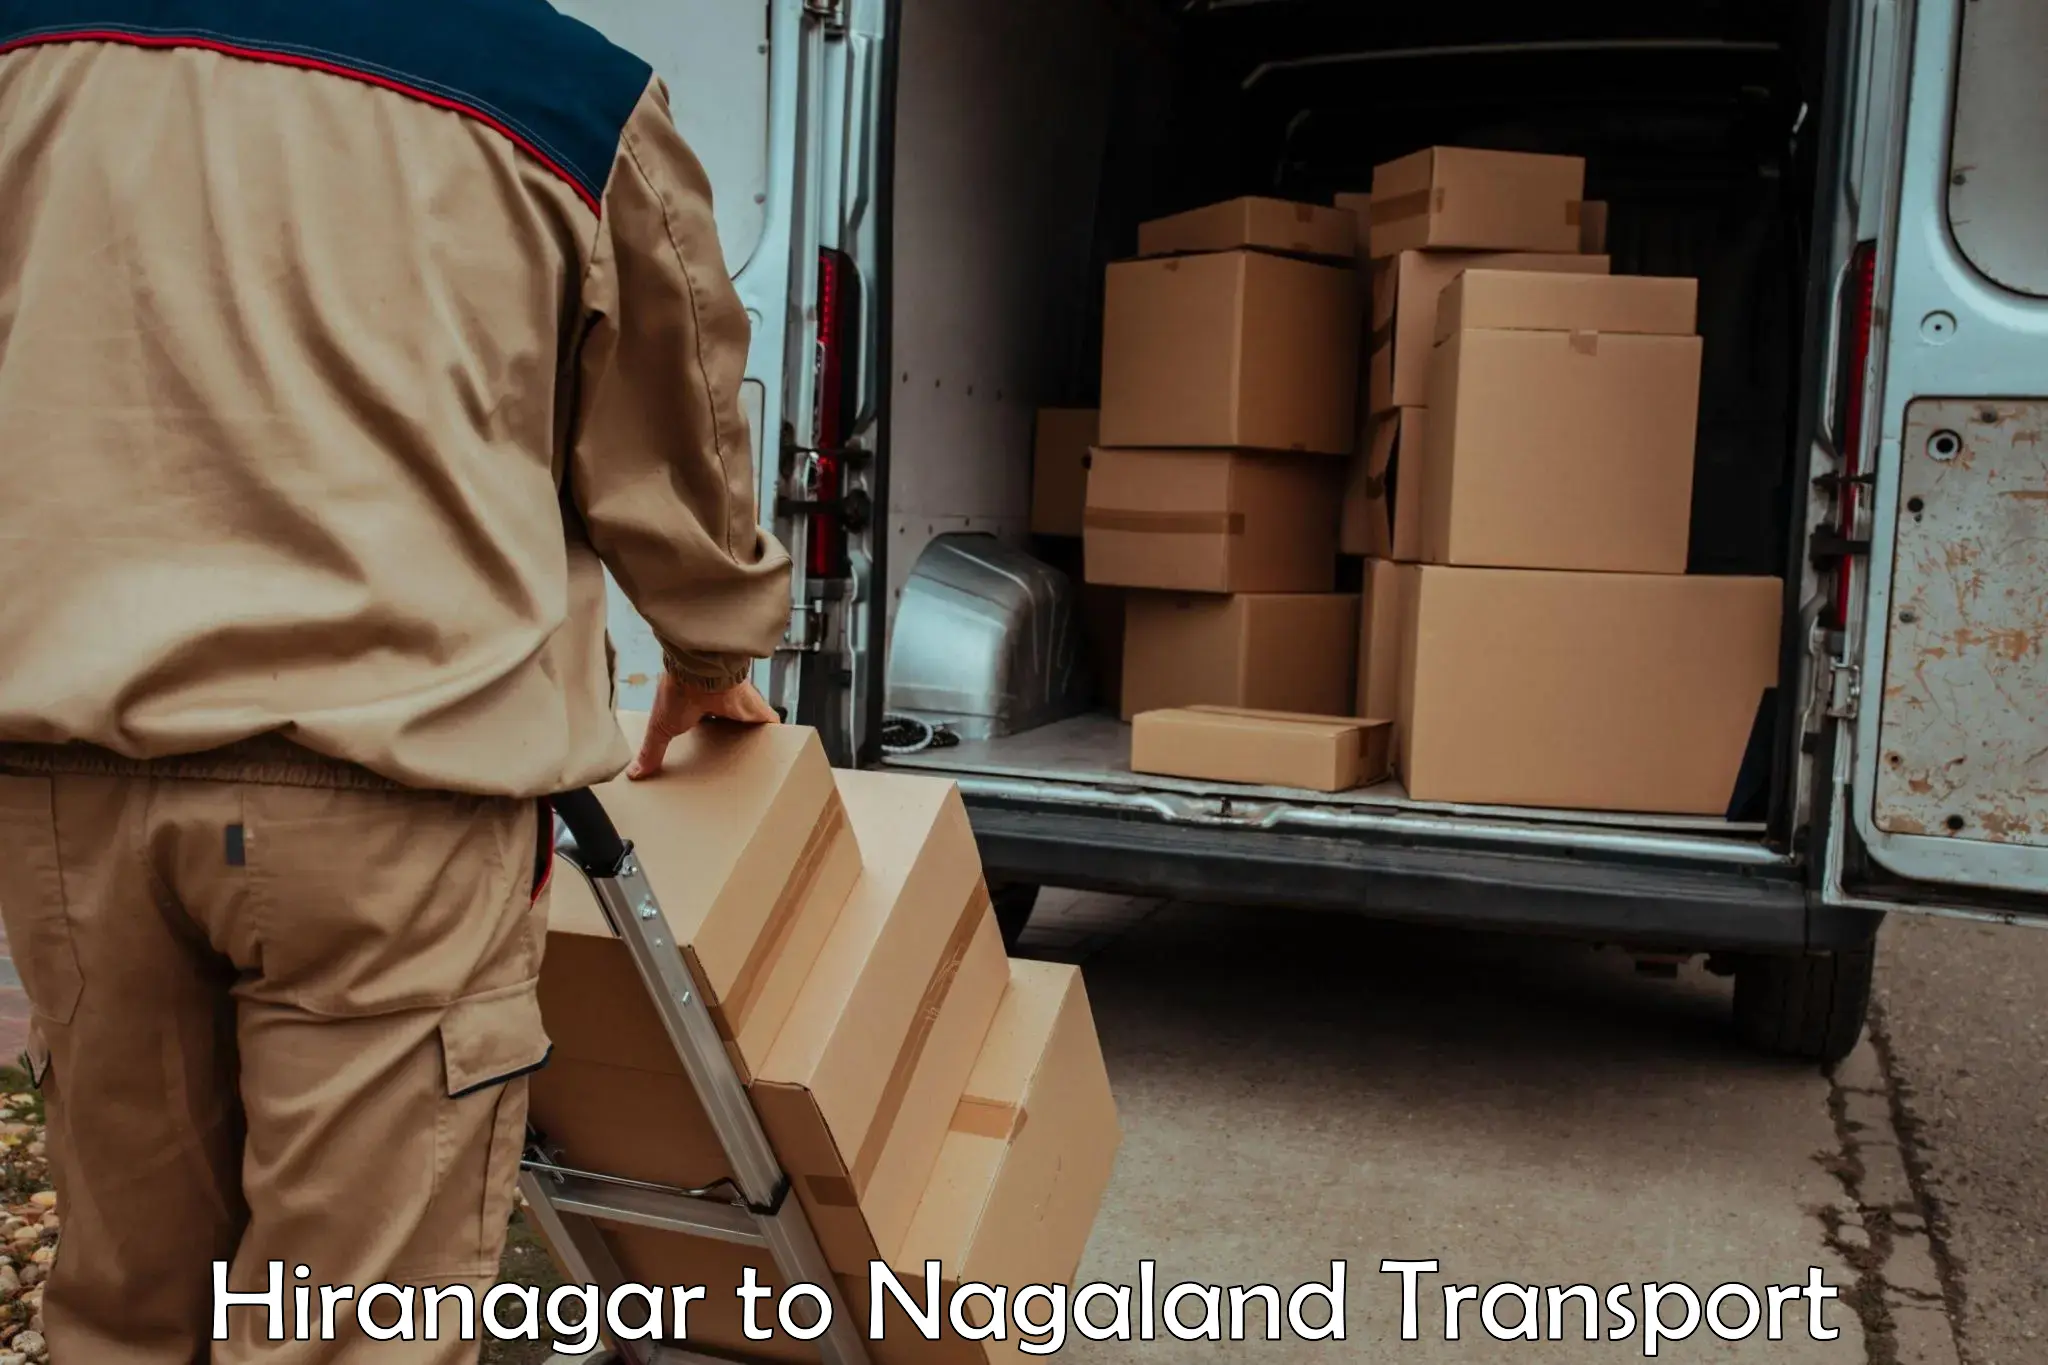 Delivery service Hiranagar to NIT Nagaland